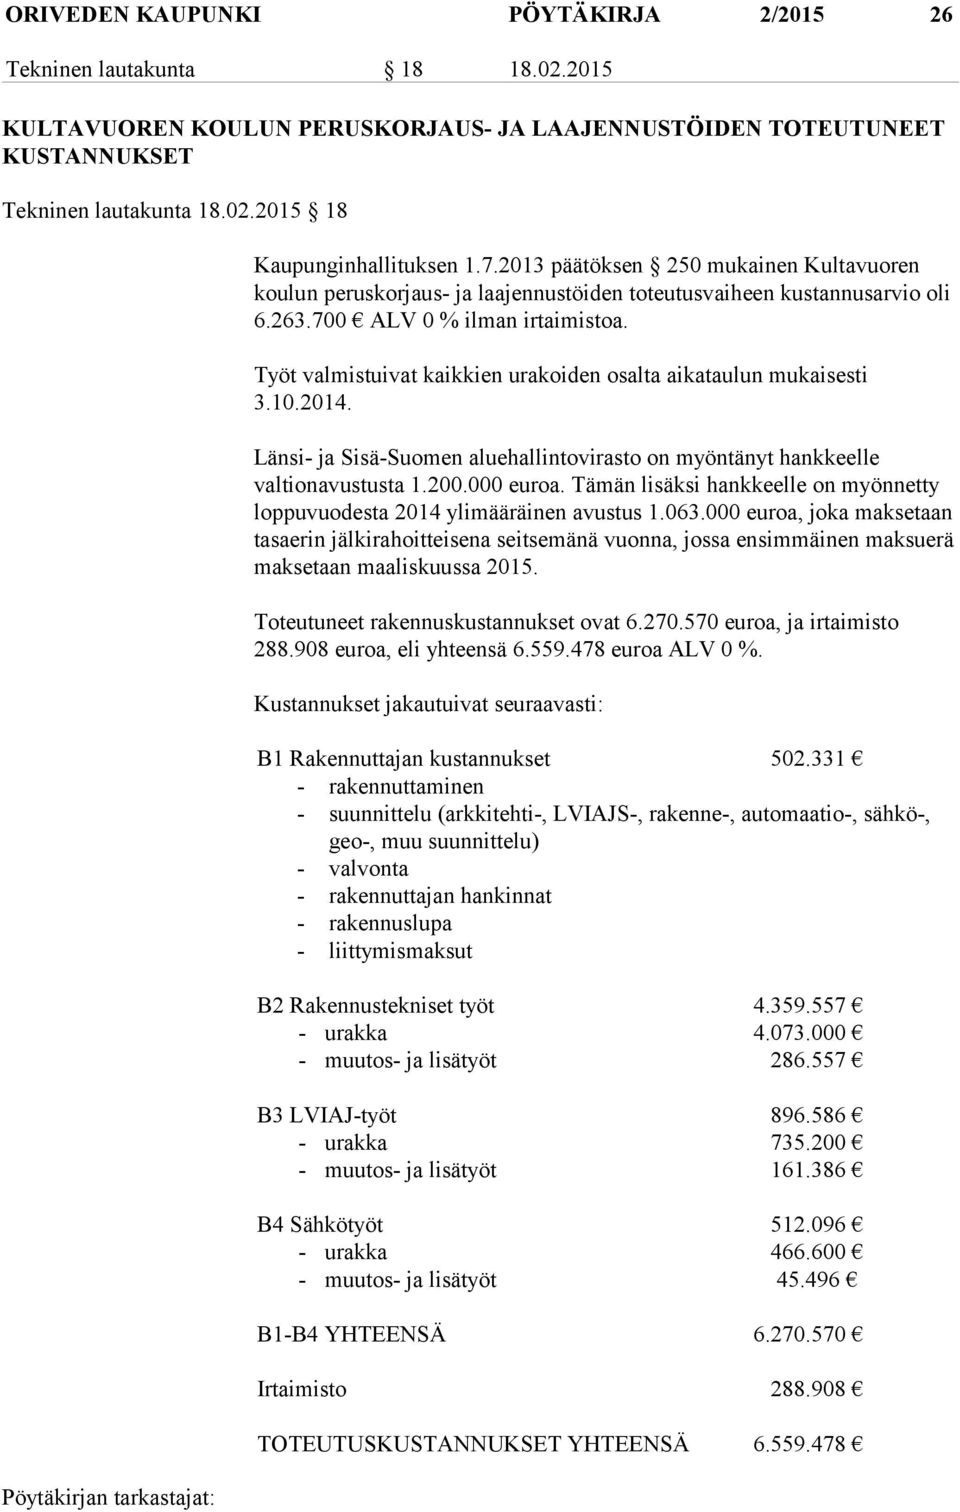 Työt valmistuivat kaikkien urakoiden osalta aikataulun mukaisesti 3.10.2014. Länsi- ja Sisä-Suomen aluehallintovirasto on myöntänyt hankkeelle valtionavustusta 1.200.000 euroa.